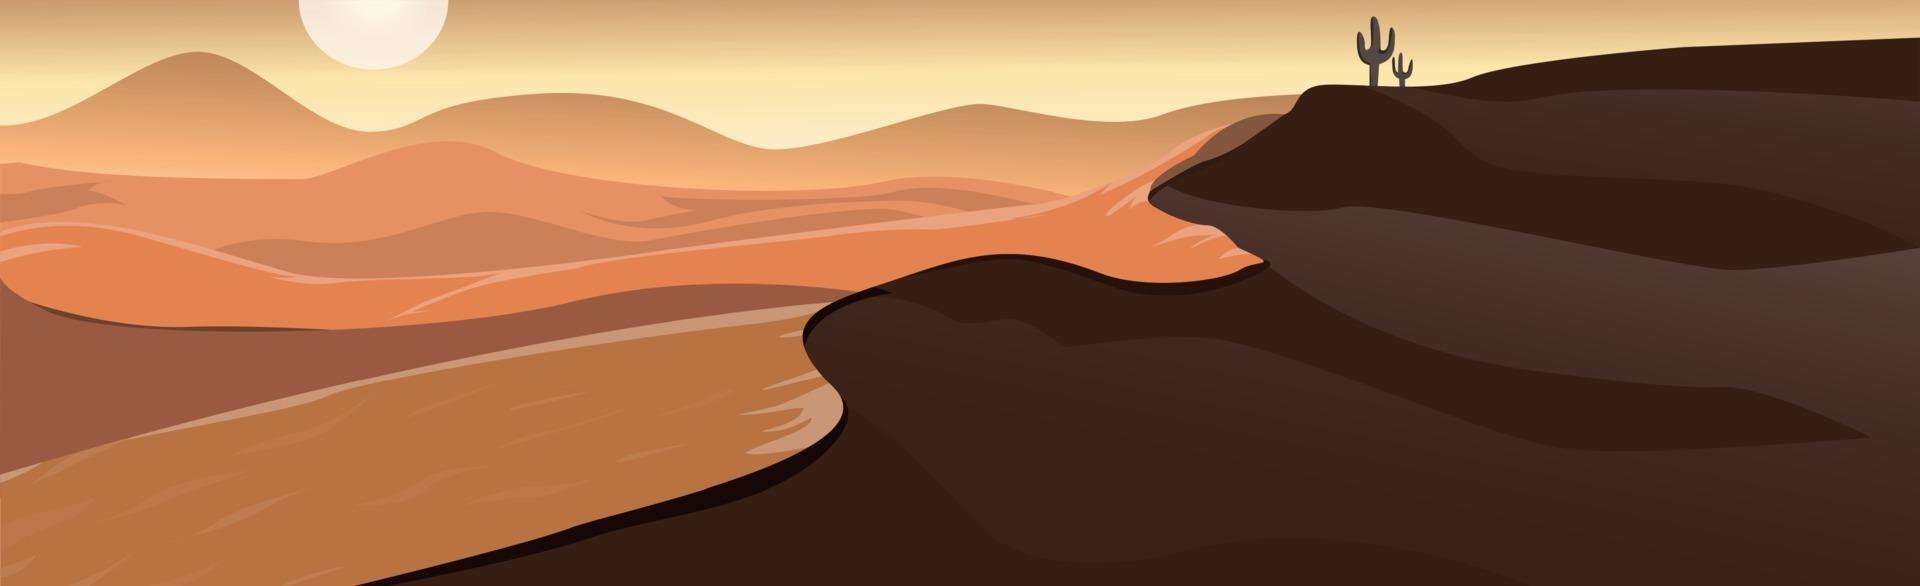 paysage panoramique désert chaud, dunes de sable - vecteur